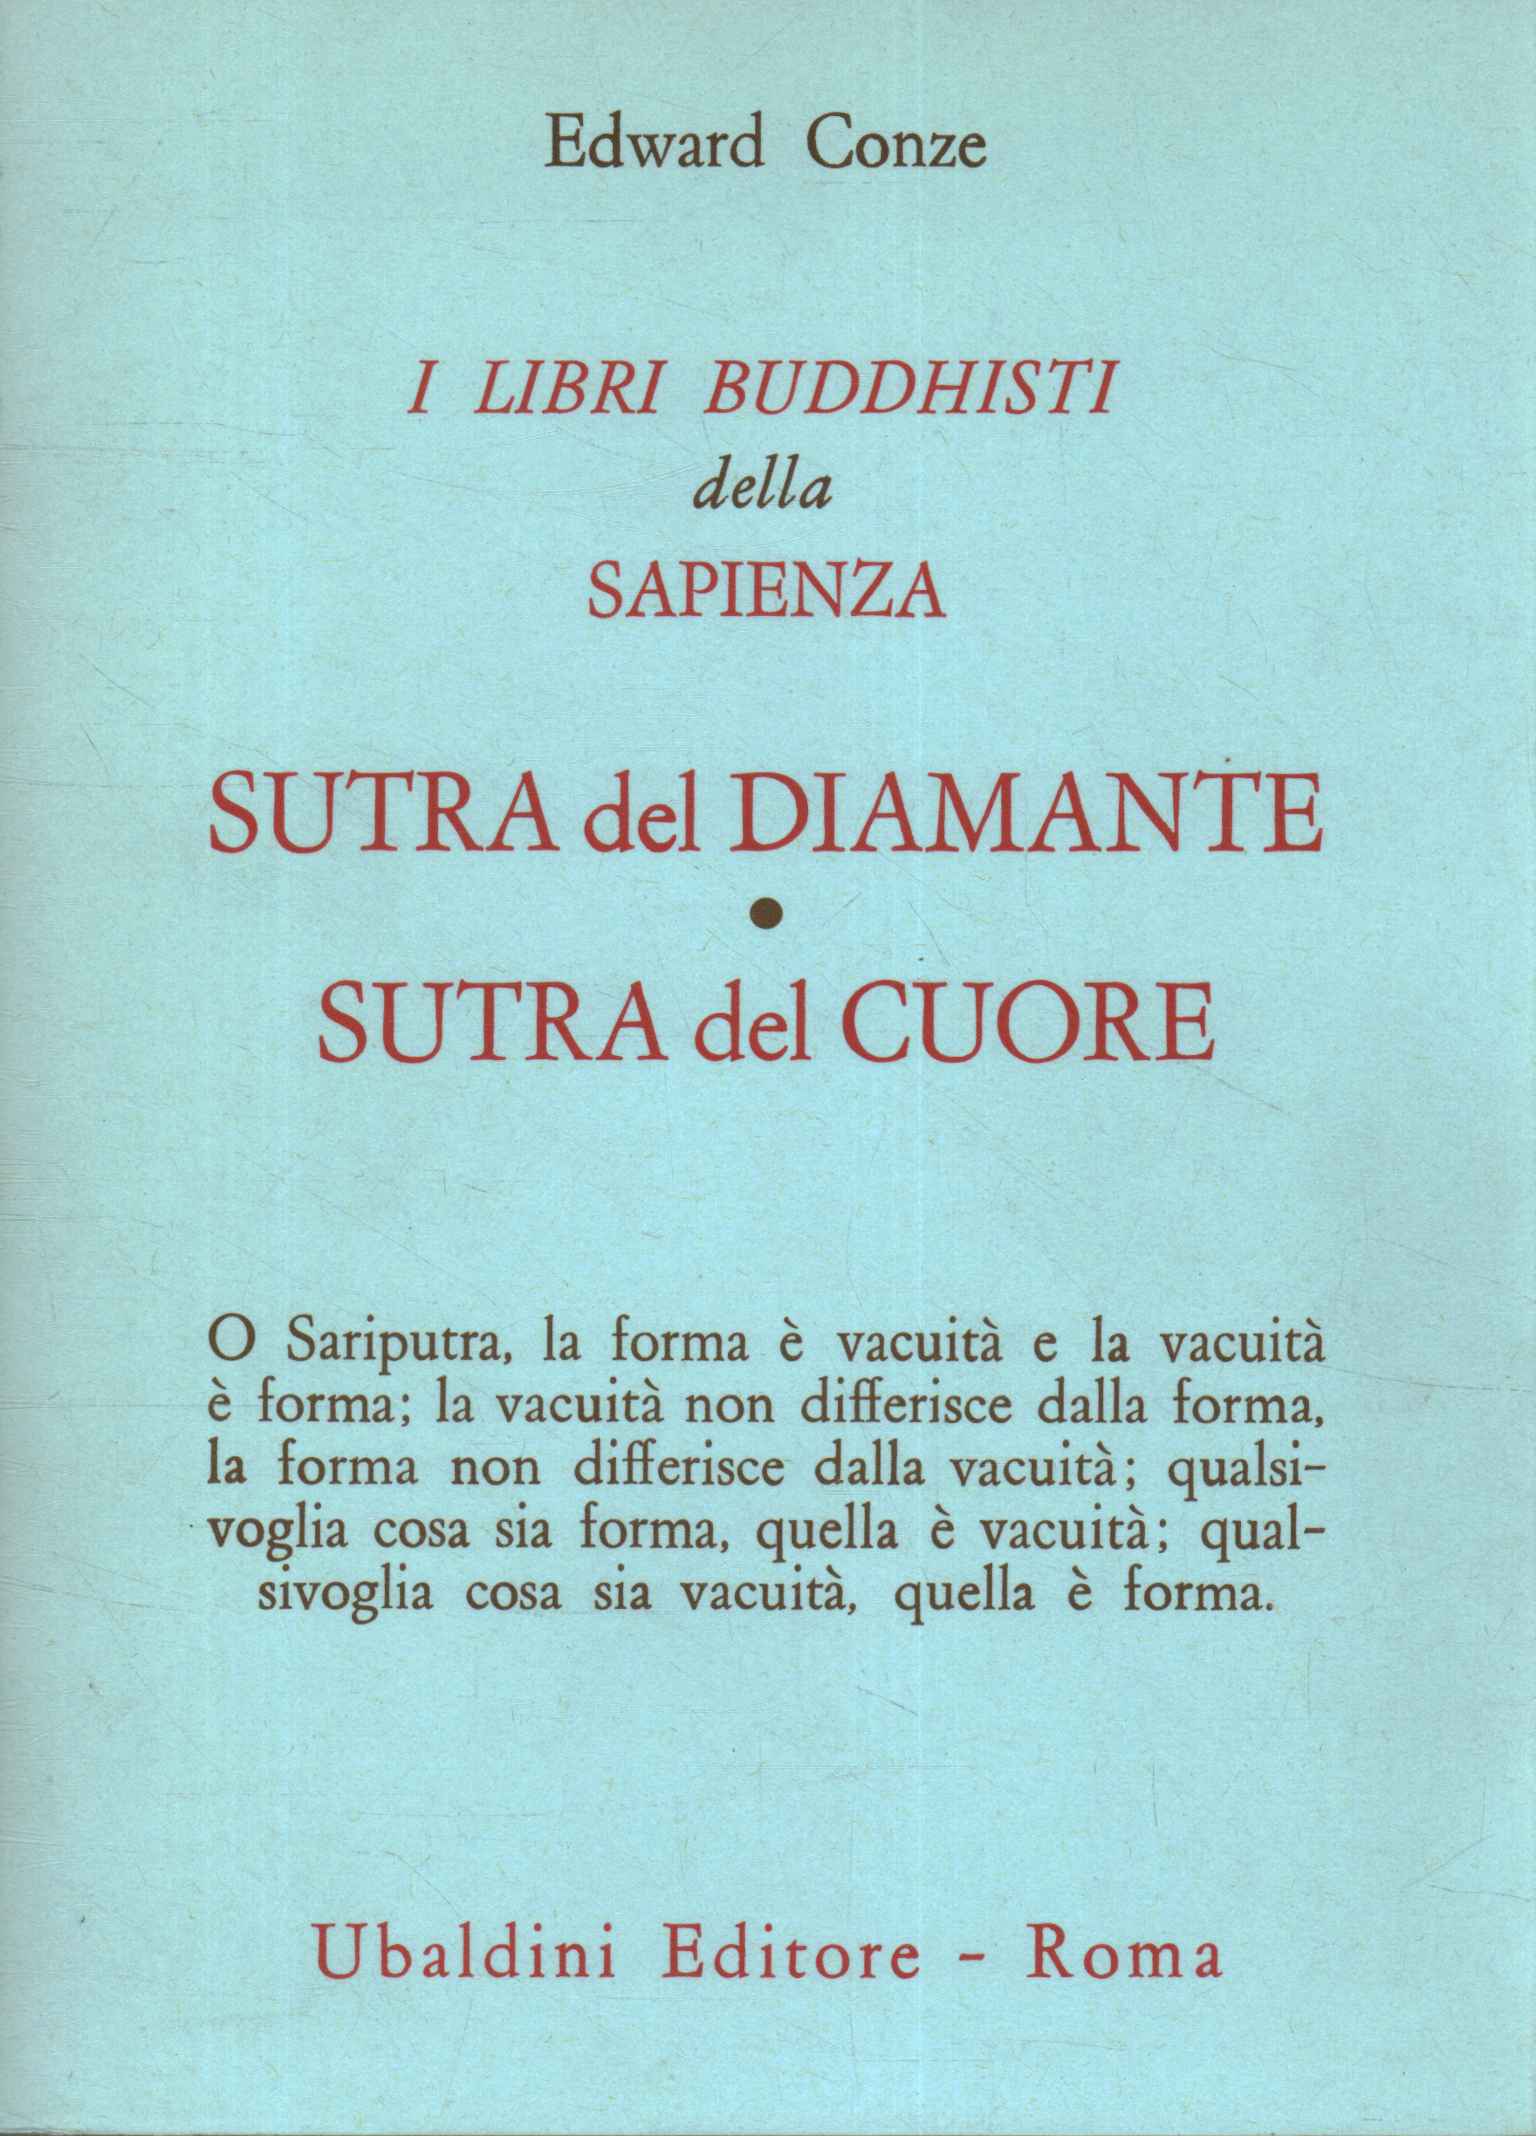 Livres de sagesse bouddhistes